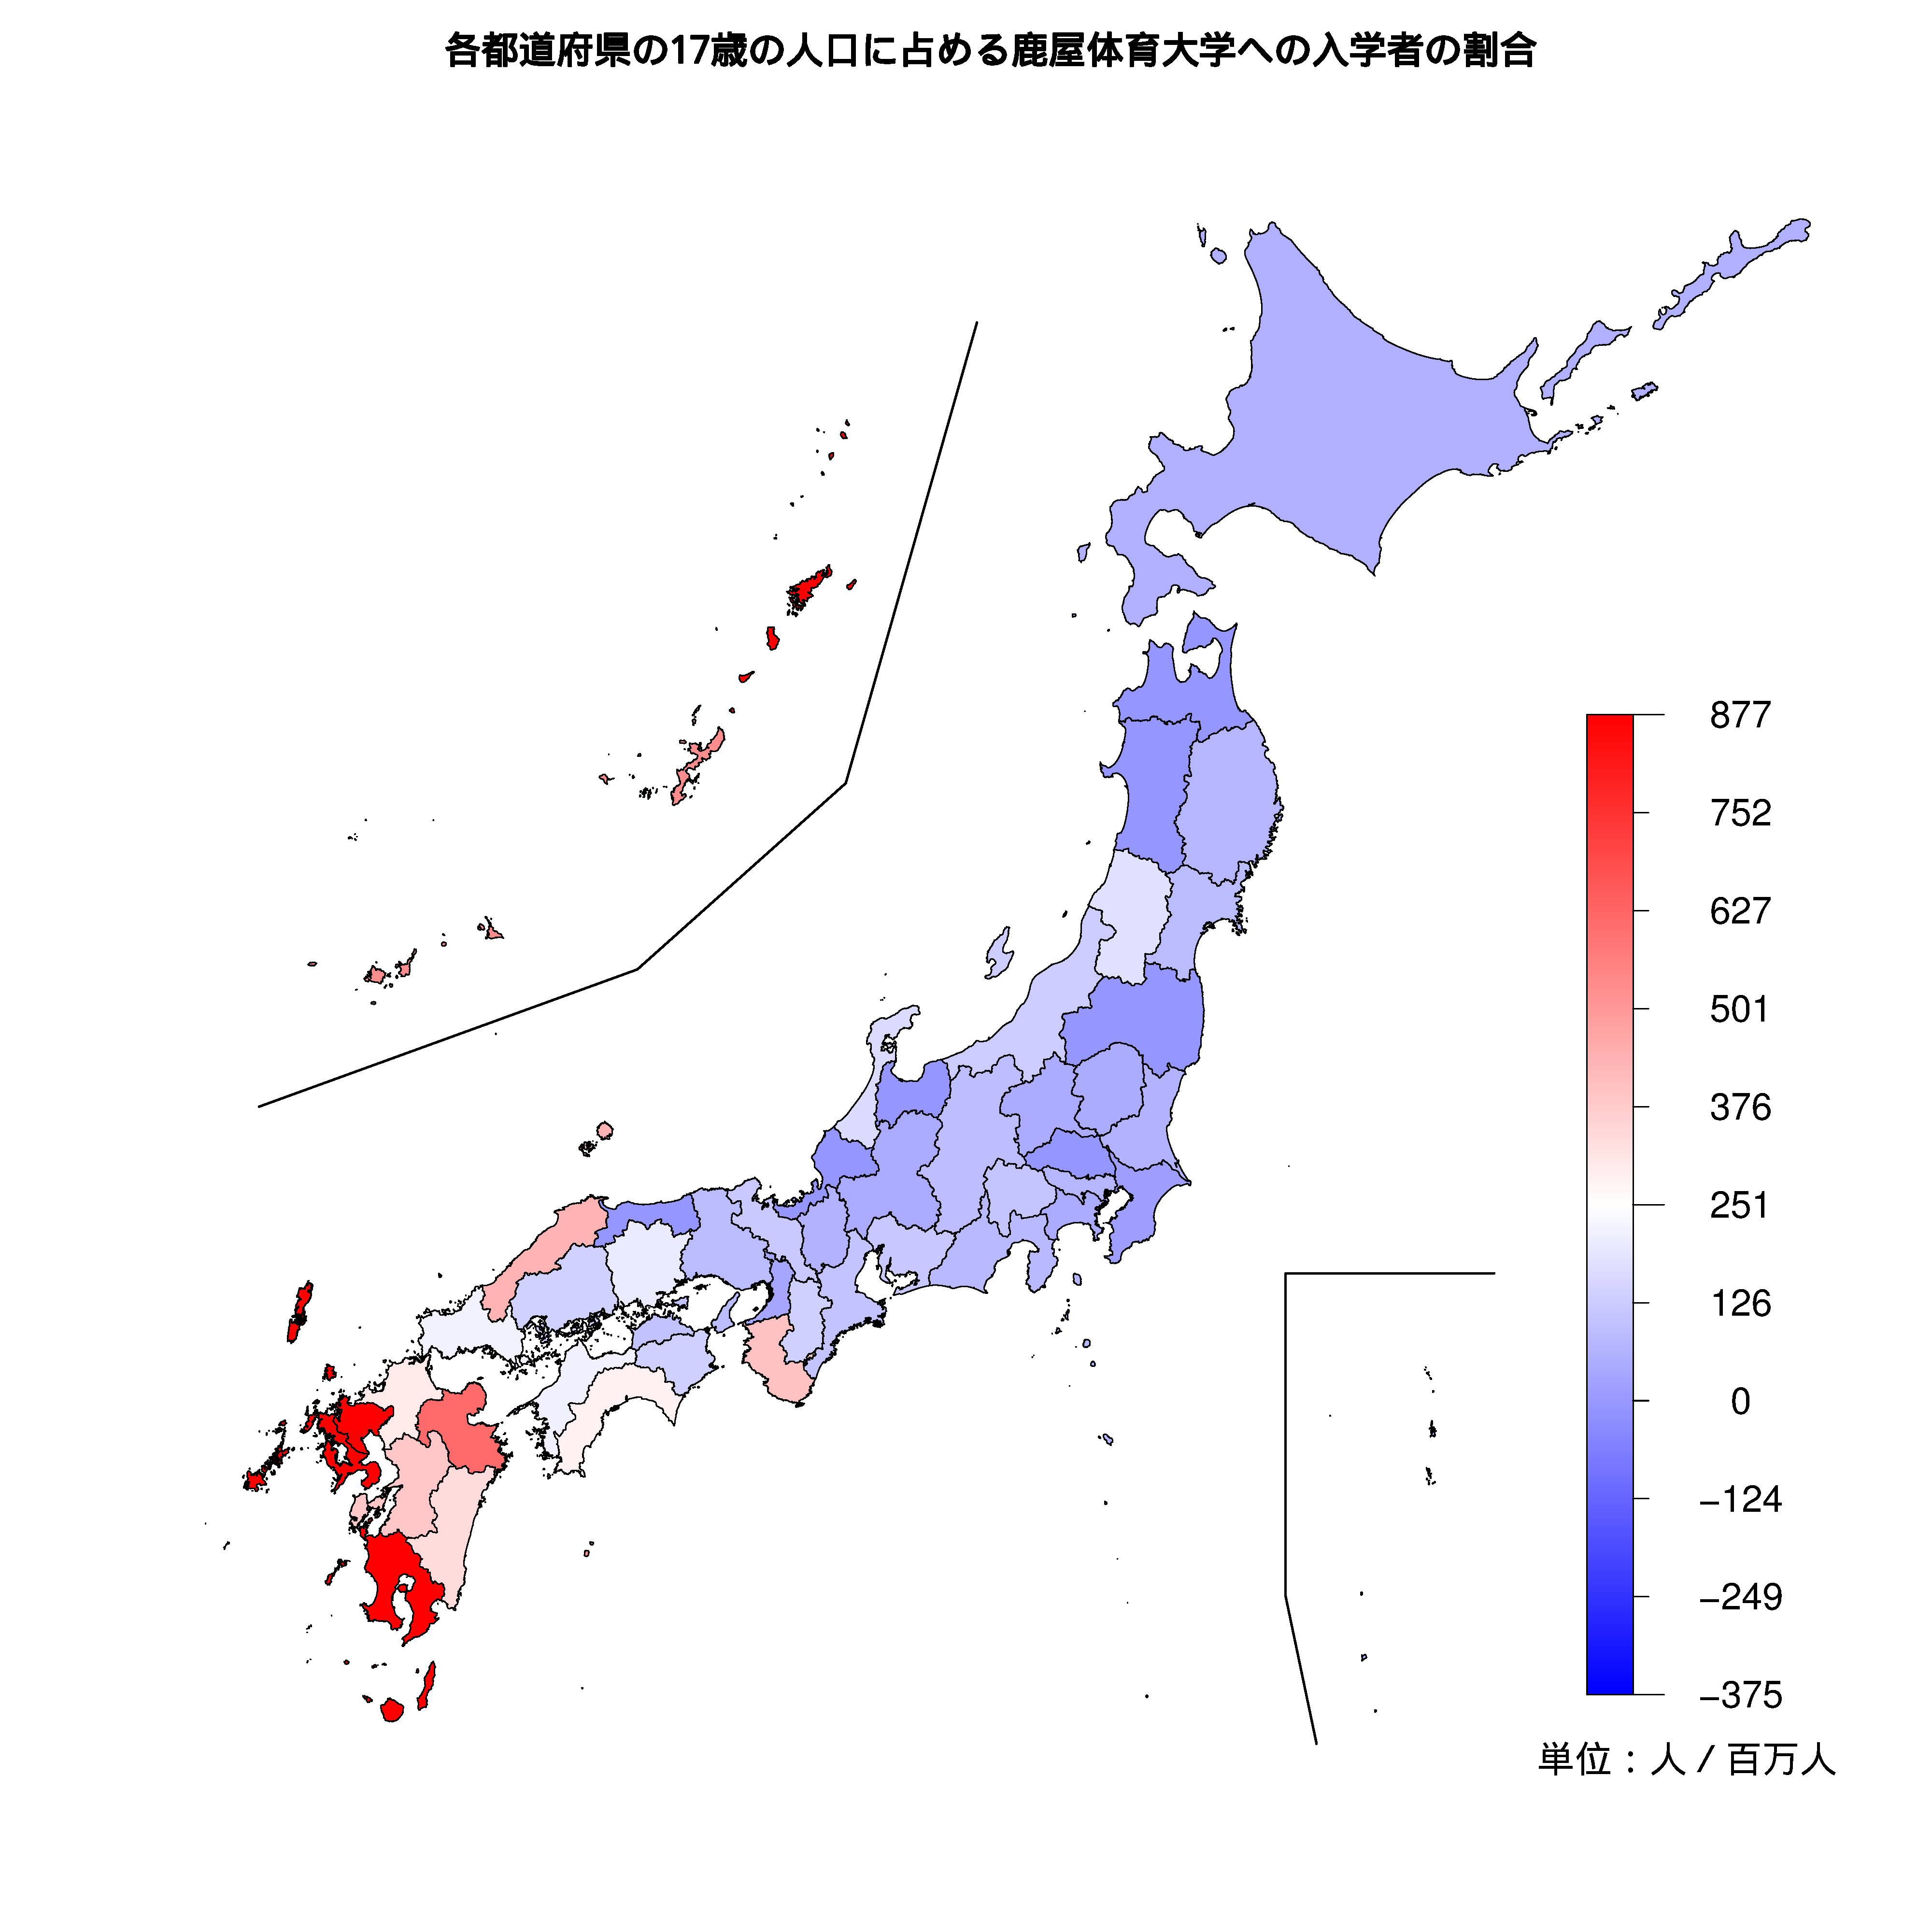 鹿屋体育大学への入学者が多い都道府県の色分け地図